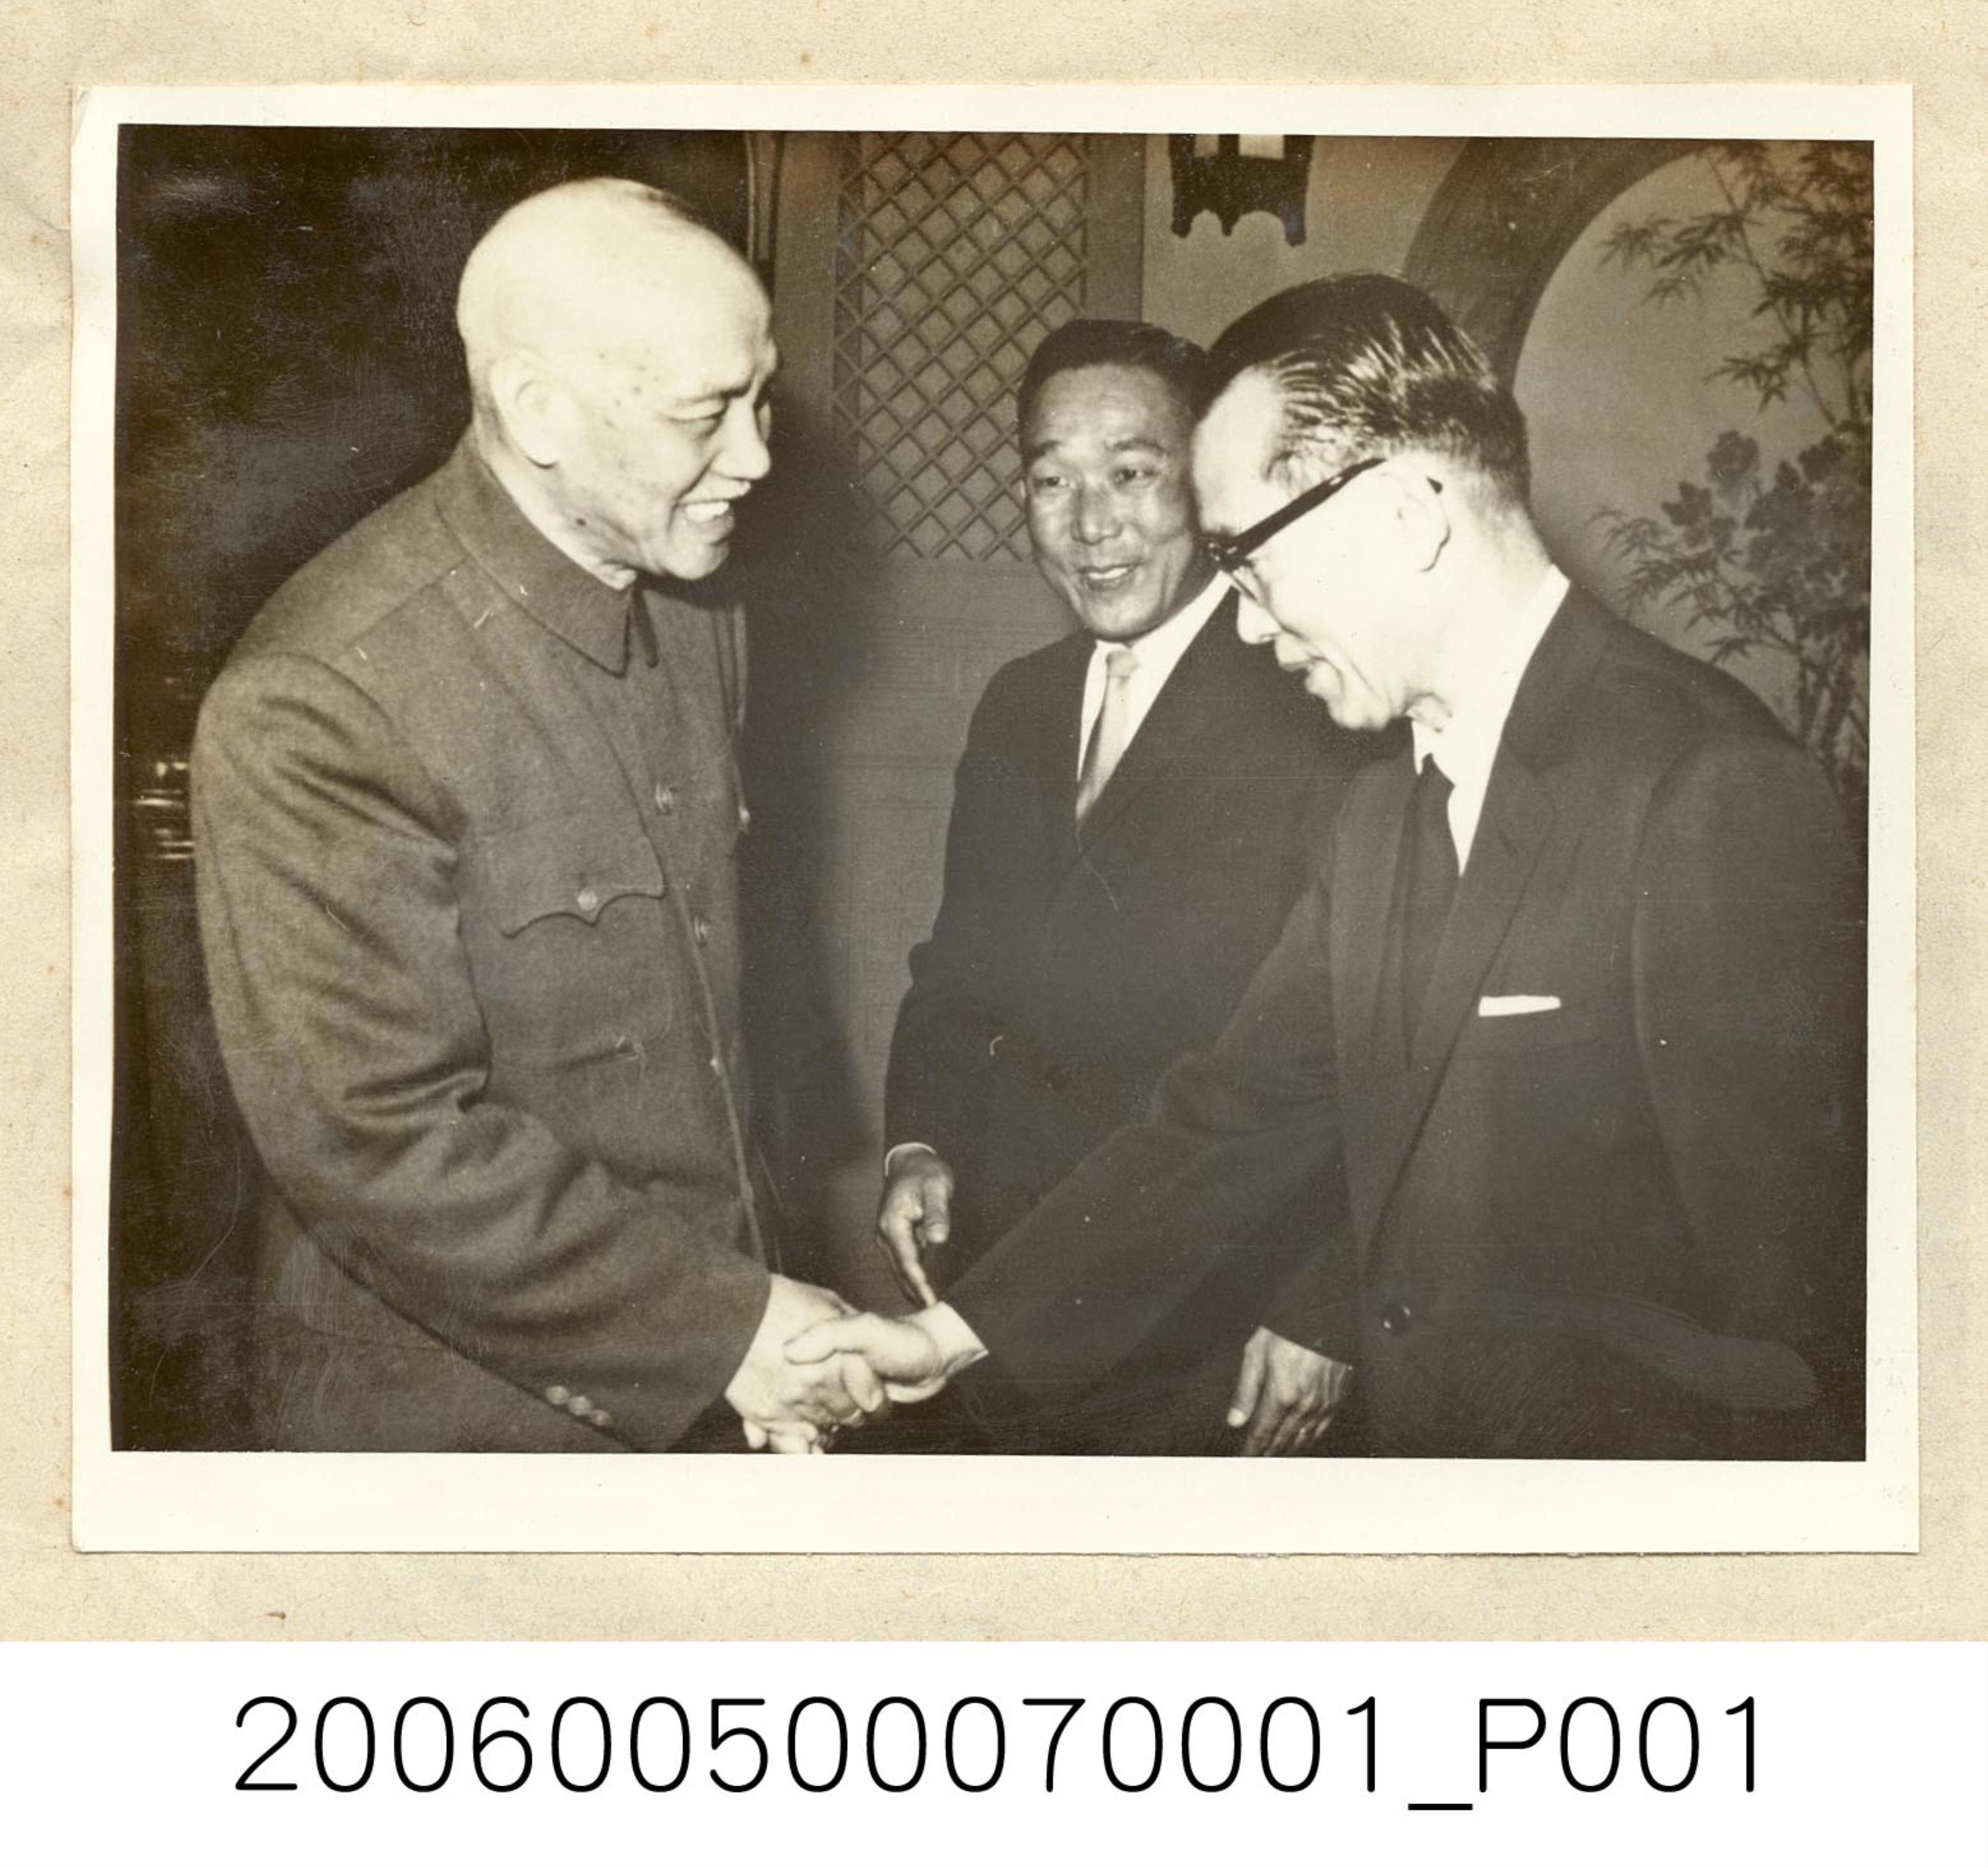 《華僑通訊社新聞照片集》〈蔣總統接見韓國總統的特使金顯哲博士〉 (共1張)